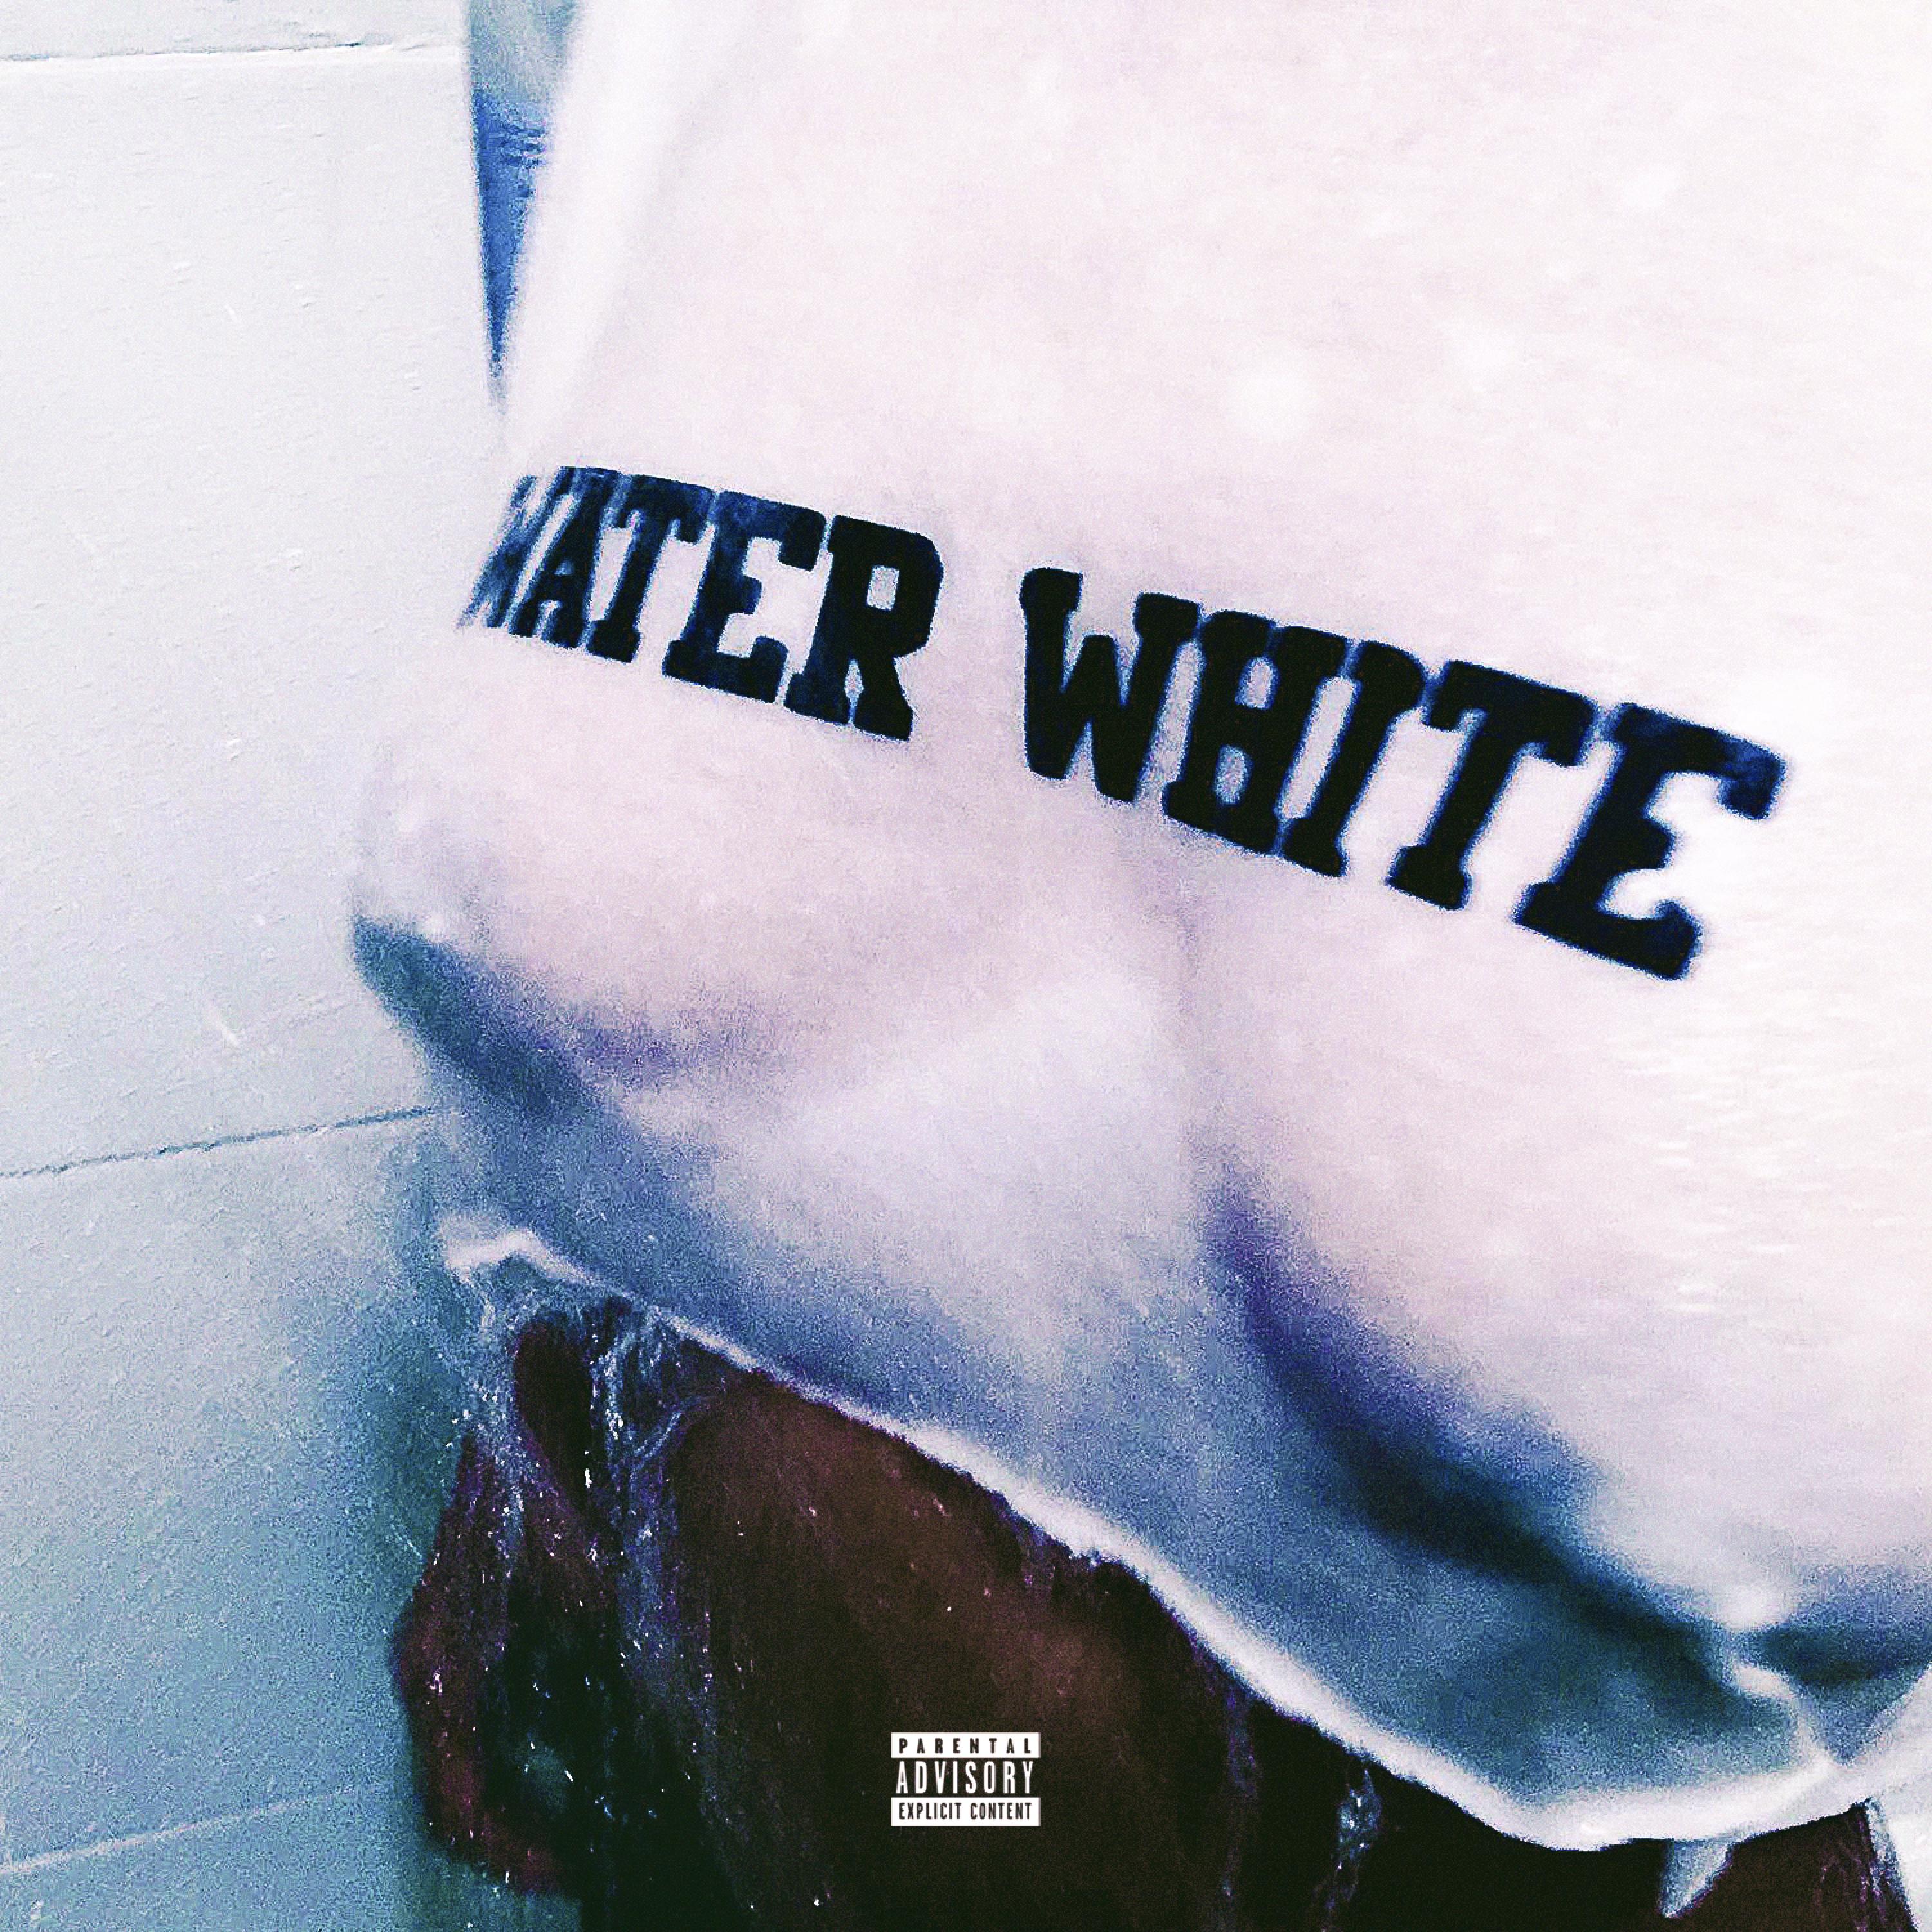 Water White